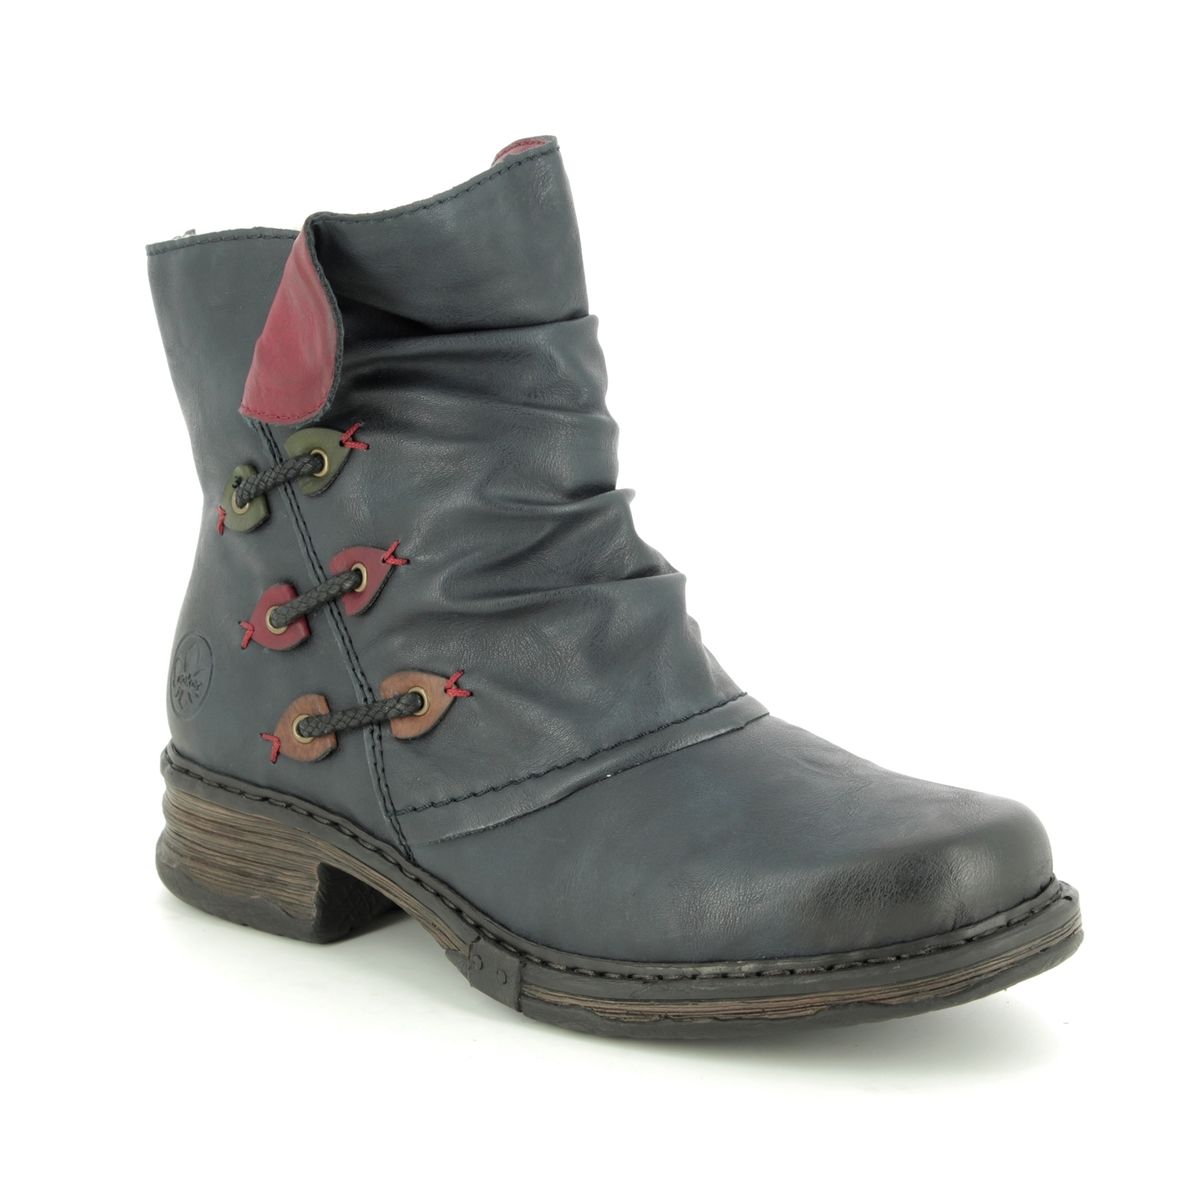 rieker boots sale